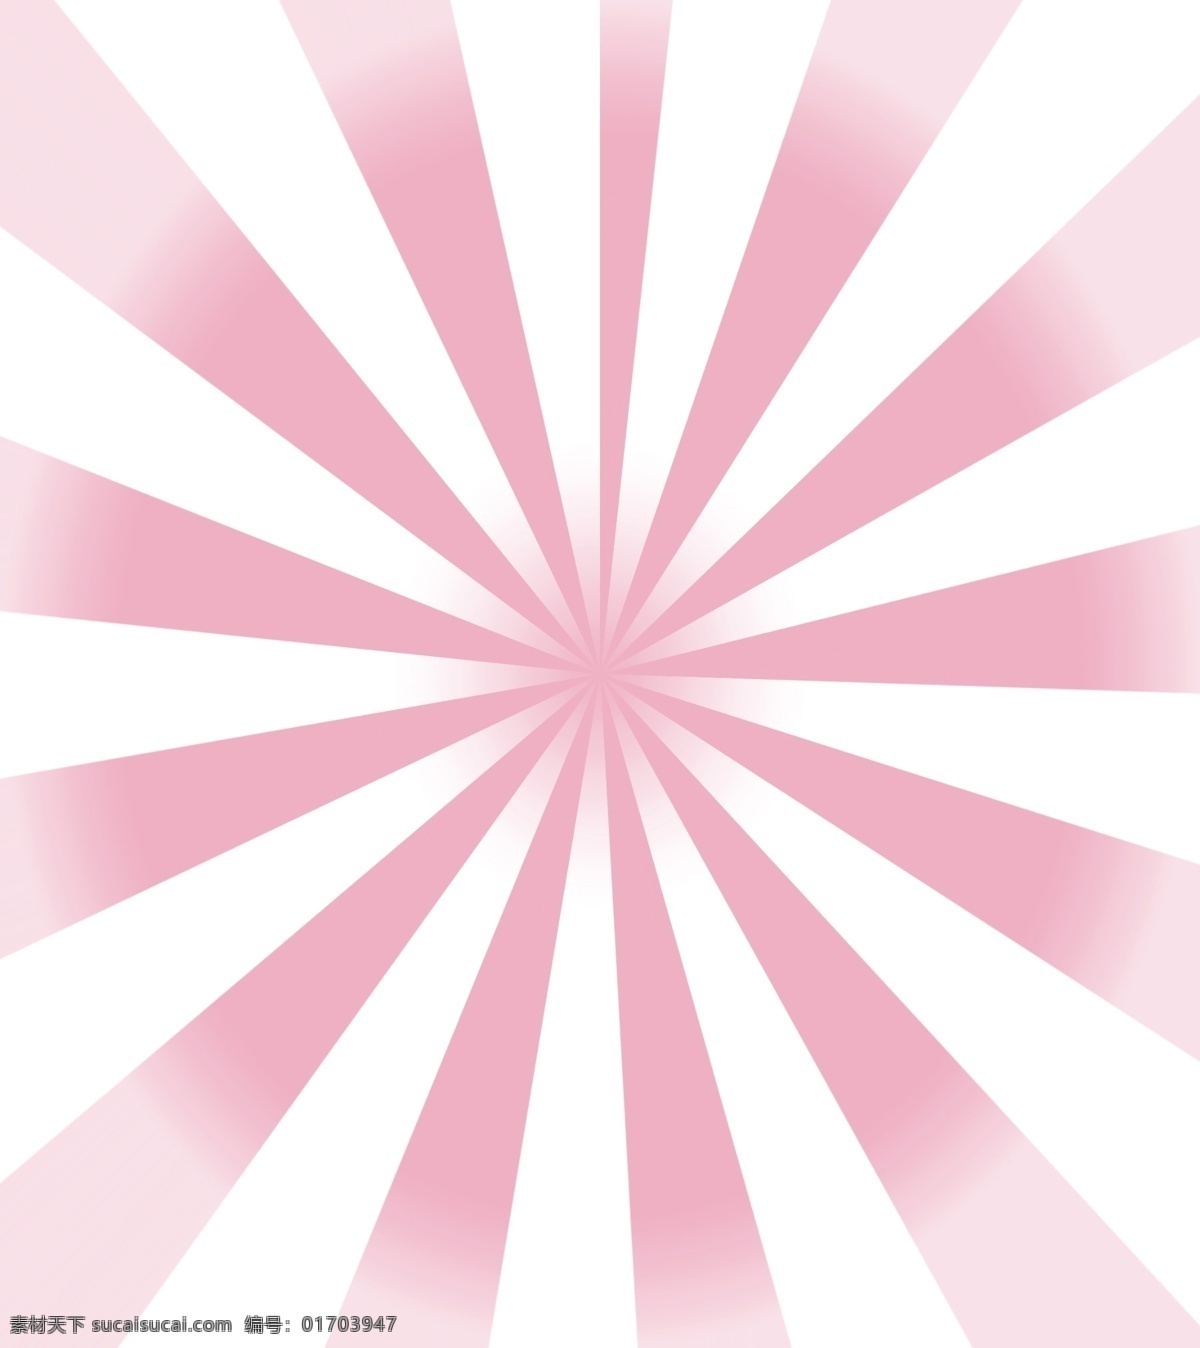 放射线条 放射 线条 背景图 粉色 中间 底纹边框 其他素材